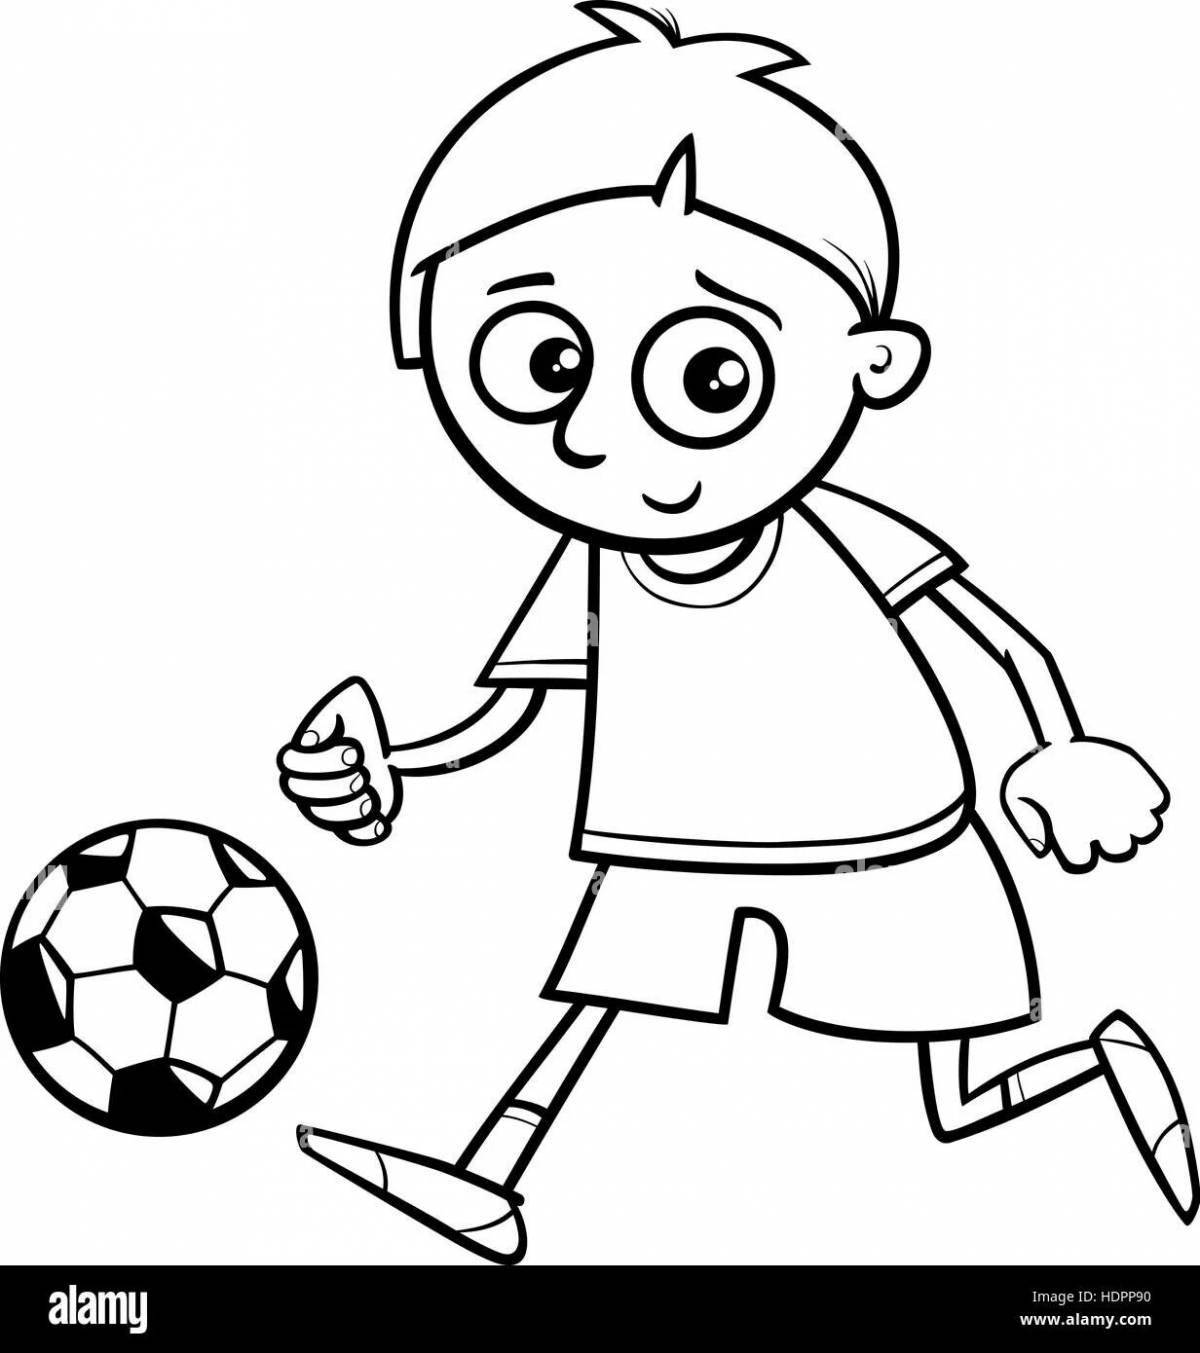 Раскраска веселый мальчик, играющий в футбол